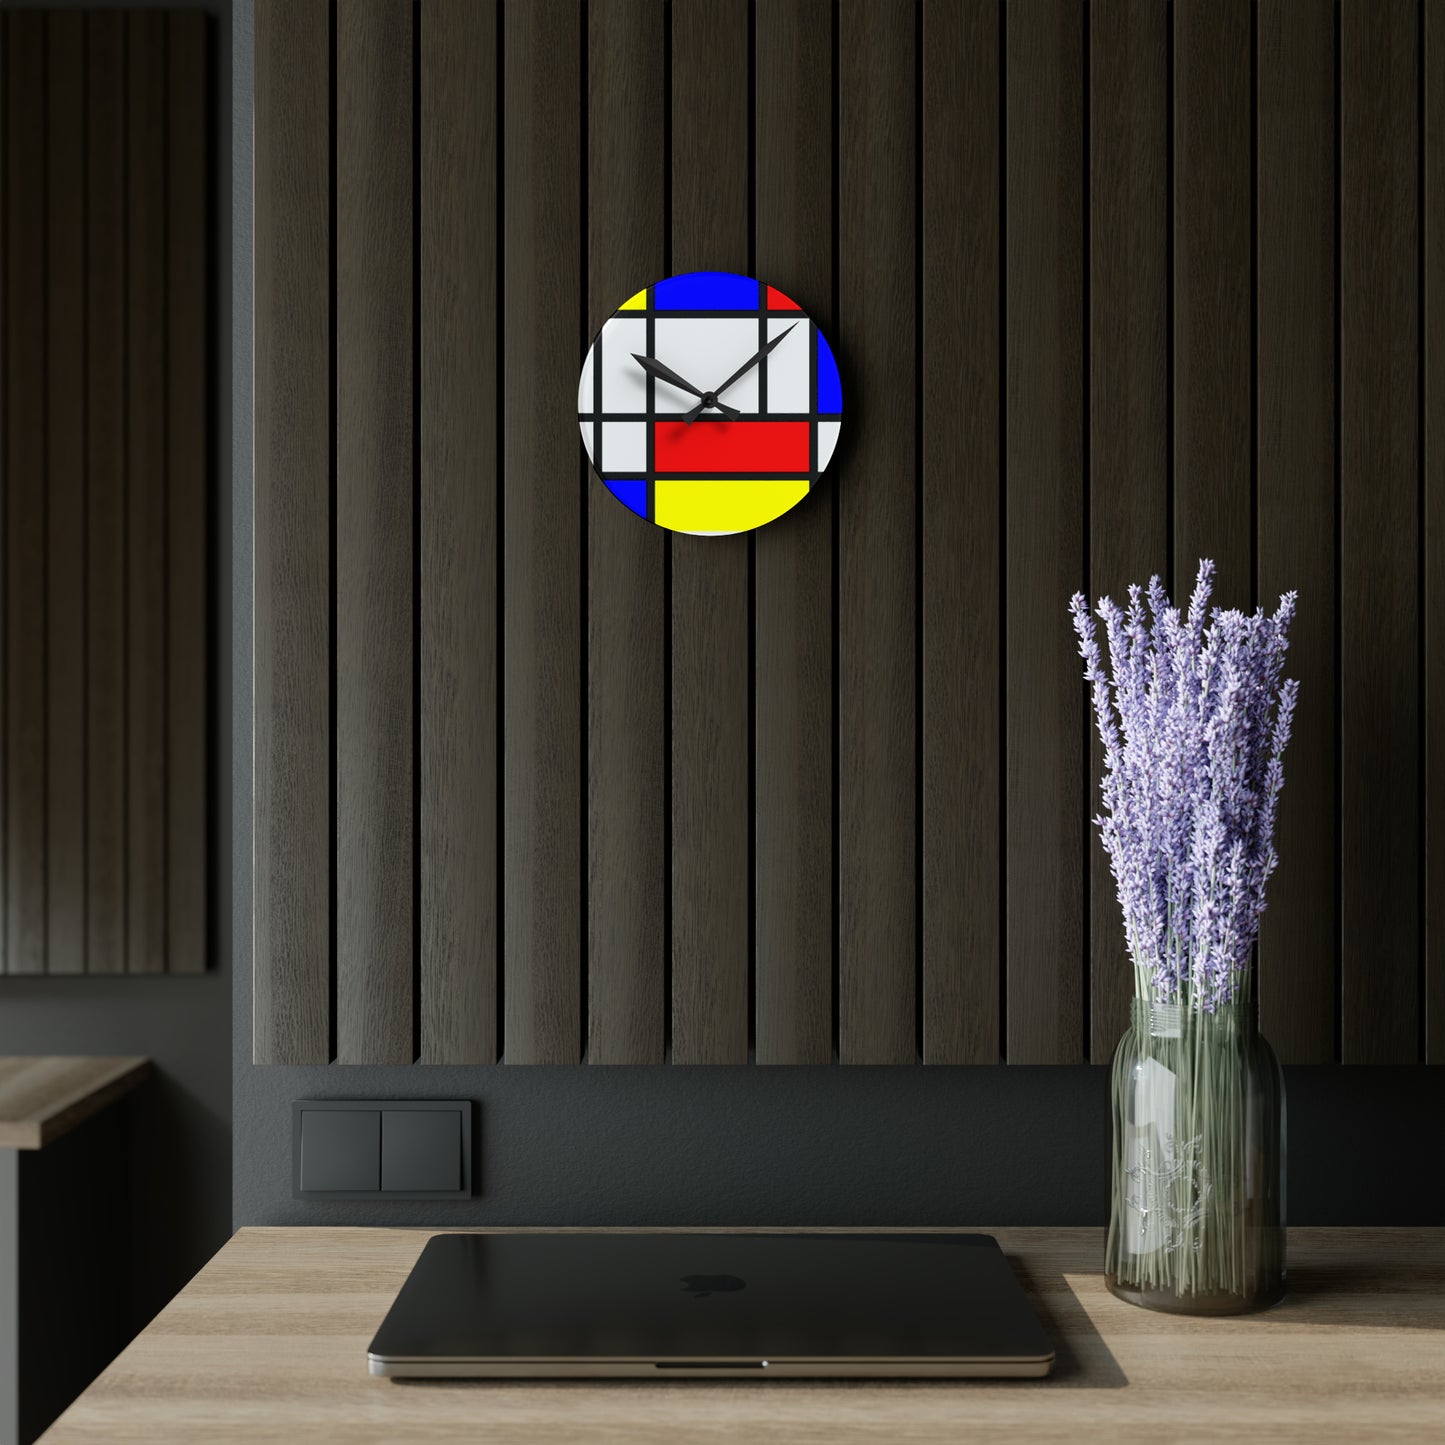 Acrylic Wall Clock, Home decor Piet Mondrian, gift for home, wall clock unique, modern wall clock